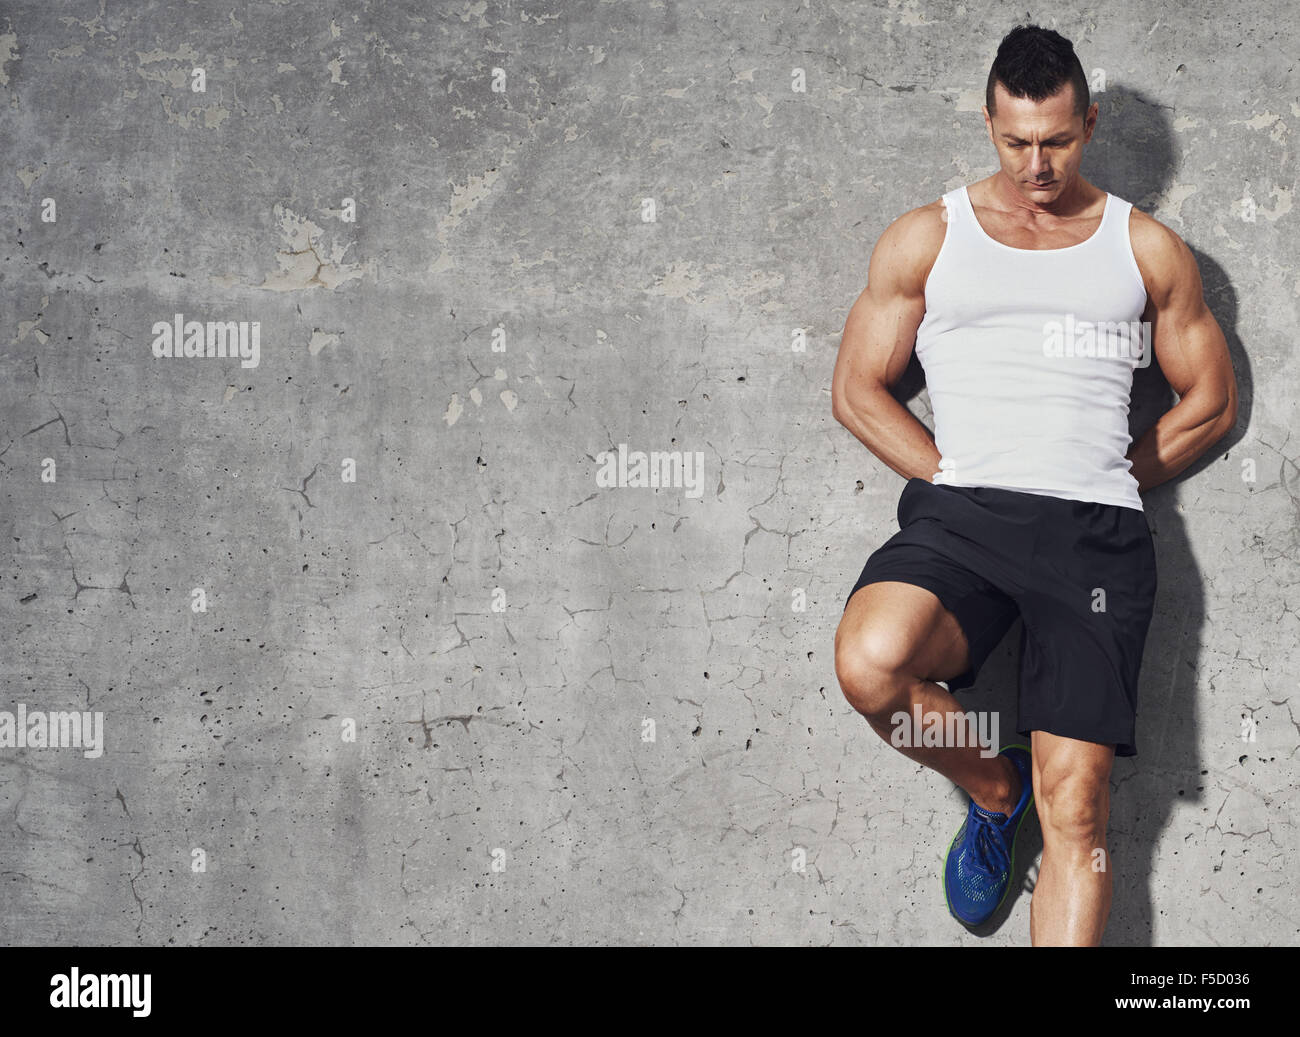 fitness-modell-mann-stand-vor-grauem-hintergrund-ein-bein-angewinkelt-an-wand-blickte-textfreiraum-f5d036.jpg